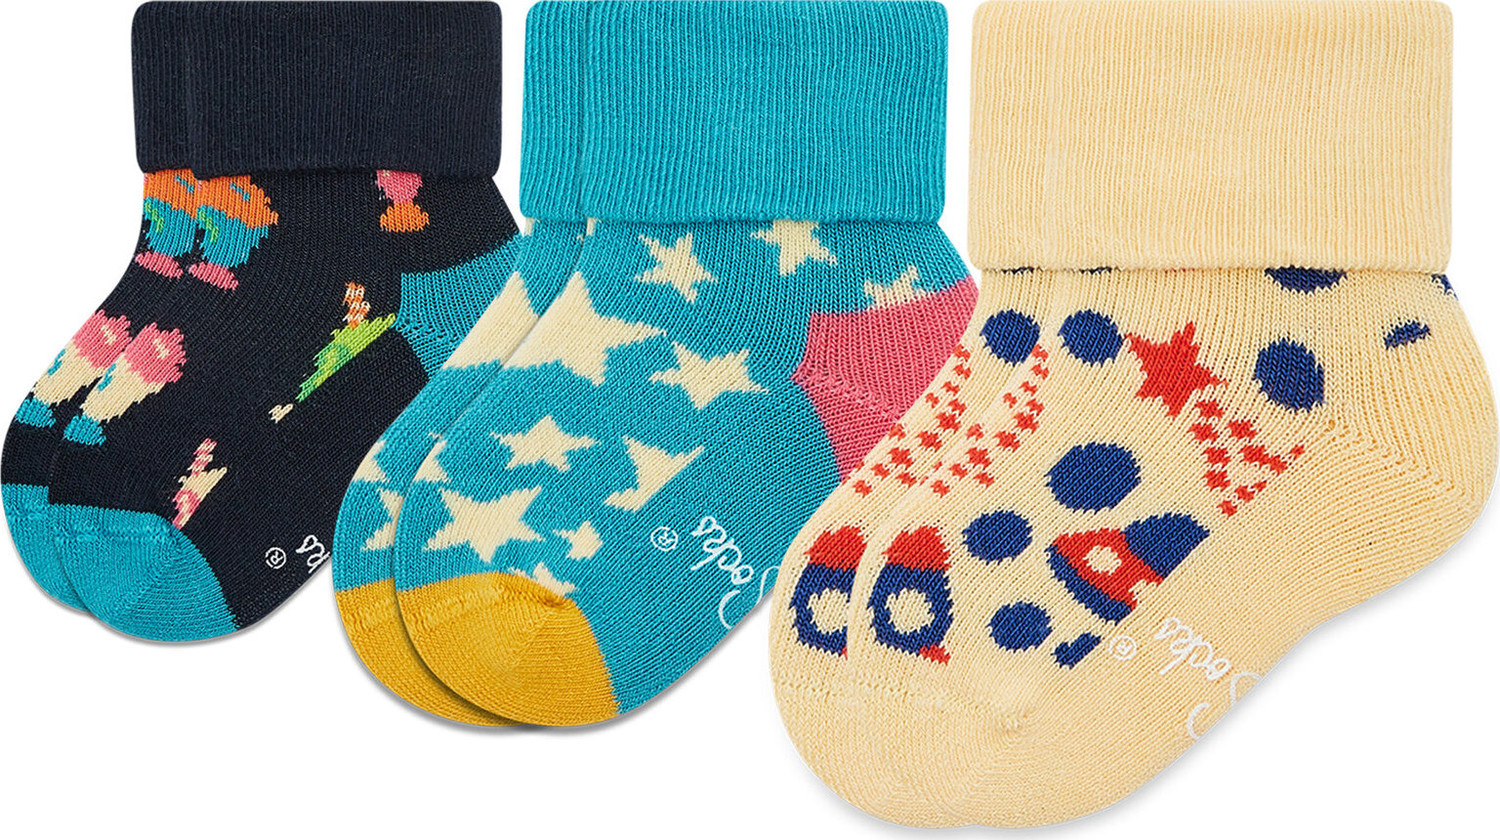 Sada 4 párů dětských vysokých ponožek Happy Socks XKFNT08-6500 Kolorowy